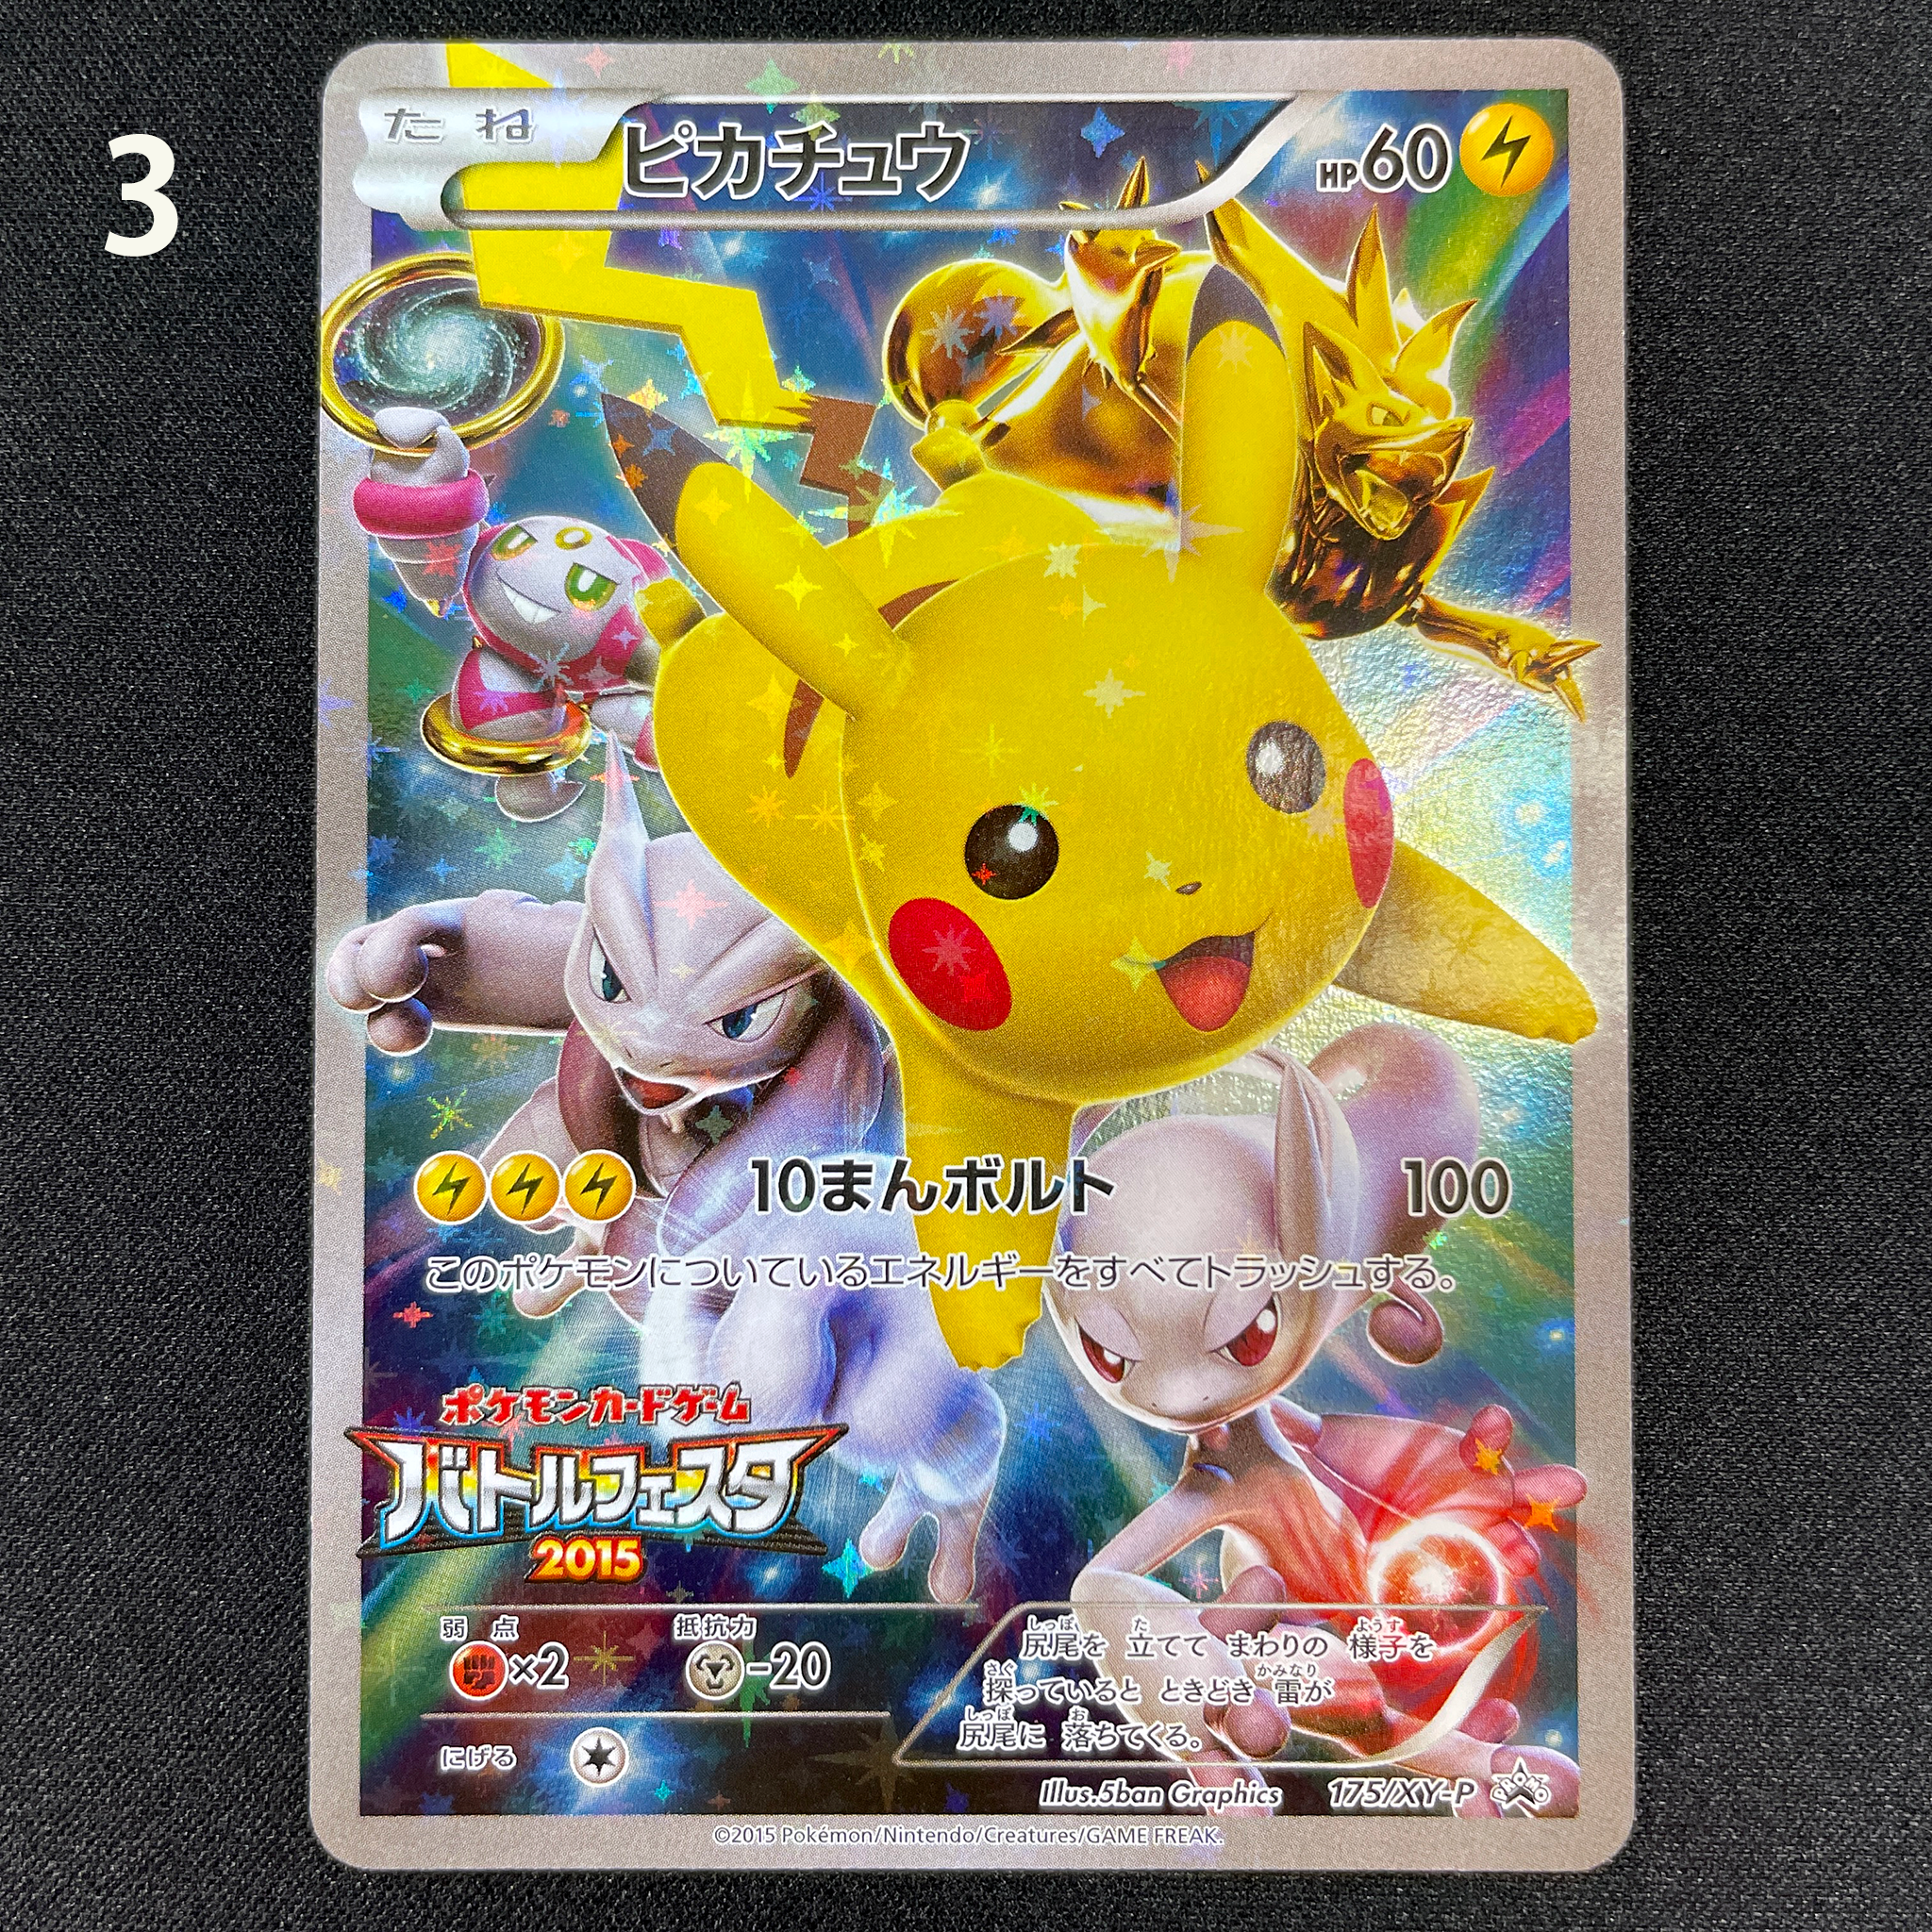 Pokémon Card Game XY PROMO 175/XY-P  BATTLE FESTA 2015  Pikachu